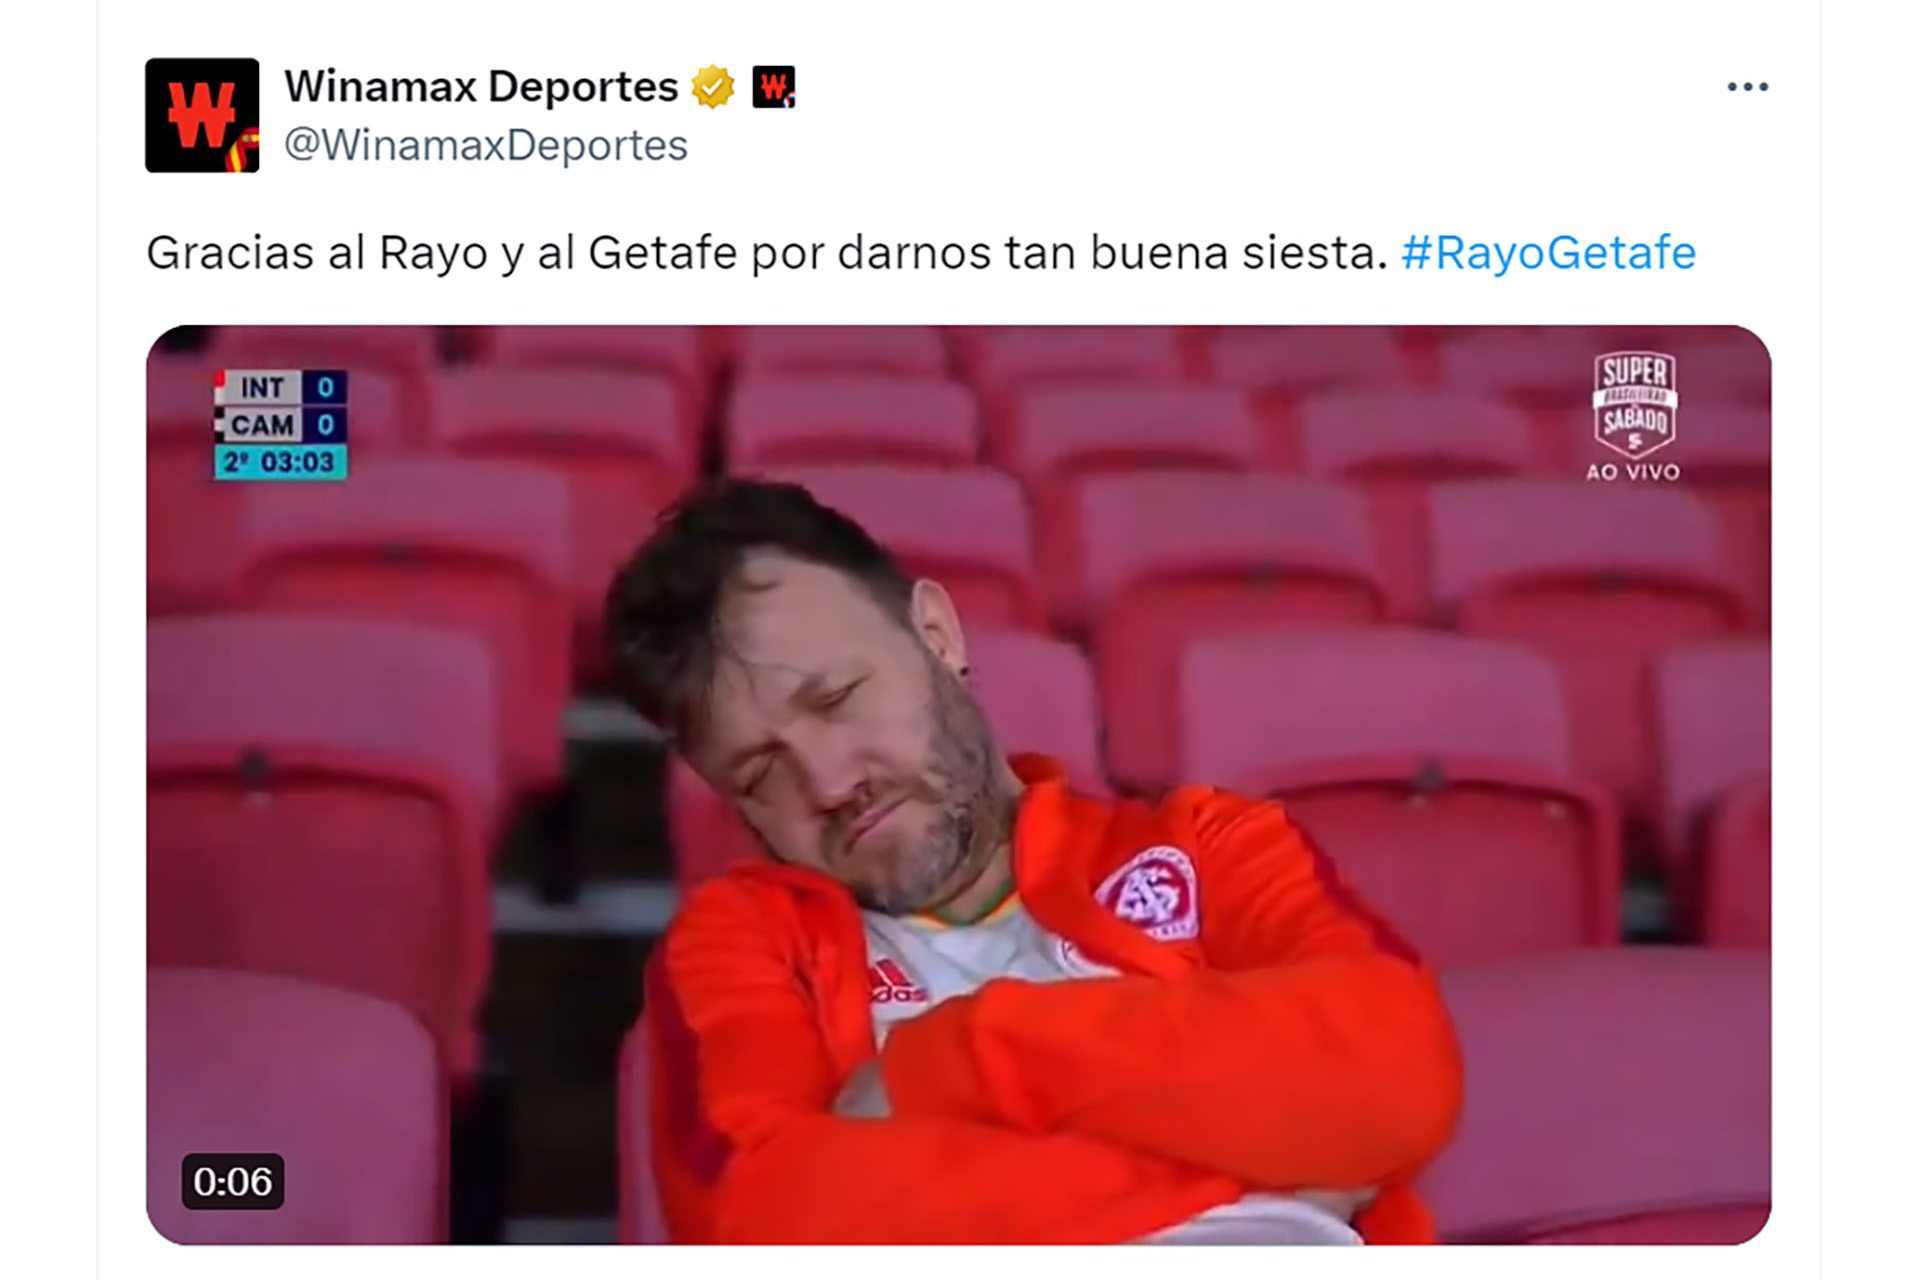 Soporífero partido entre Rayo Vallecano y Getafe